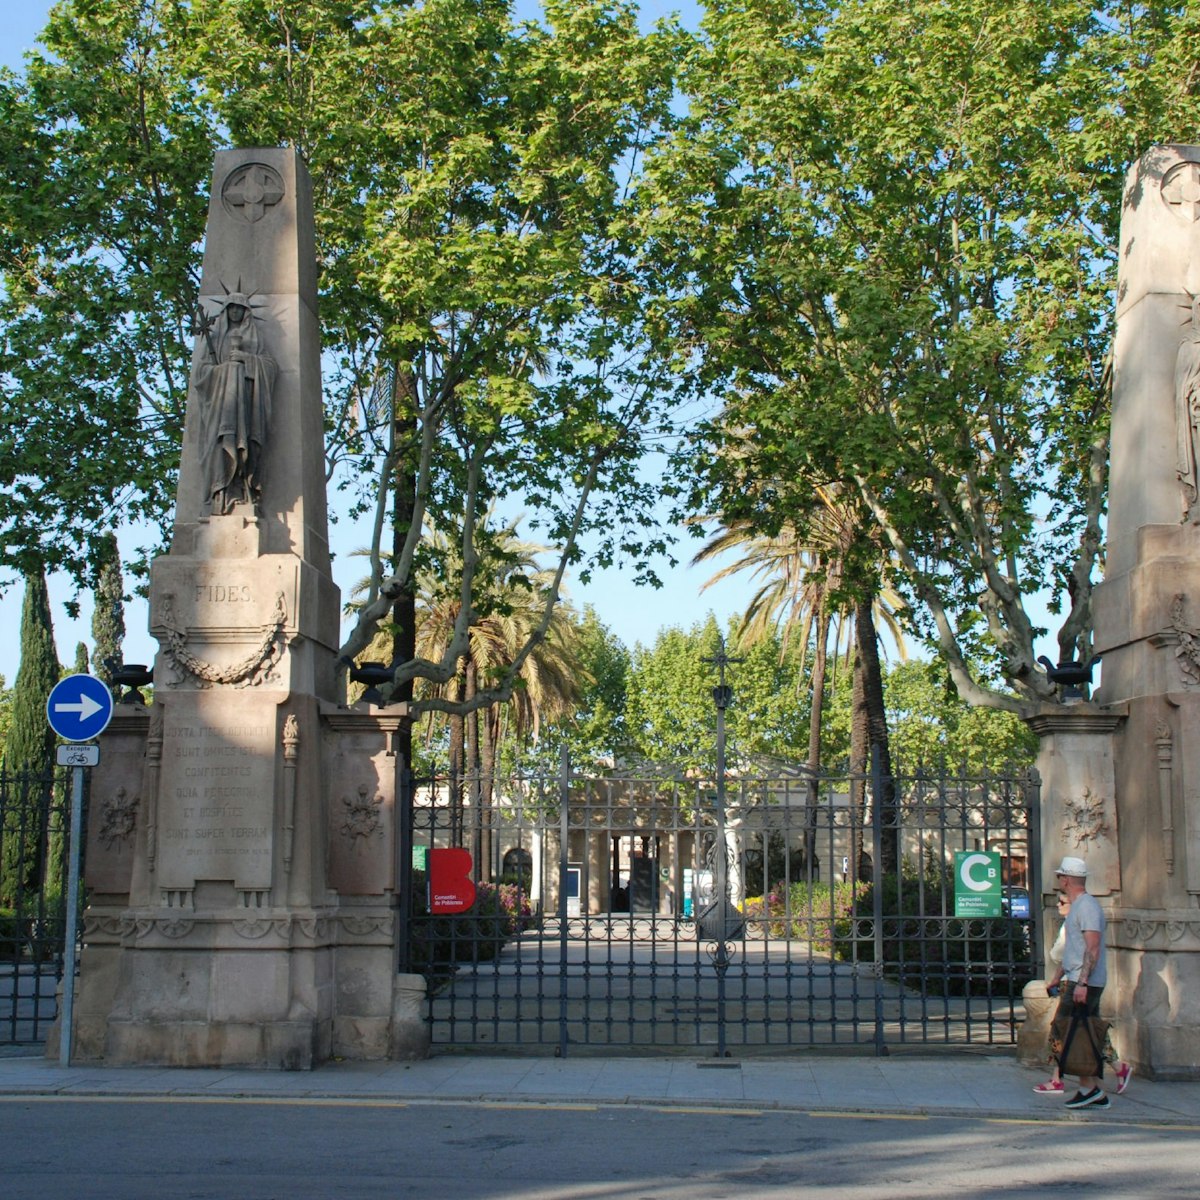 Outisde the gates of Ceminitir del Poblenou